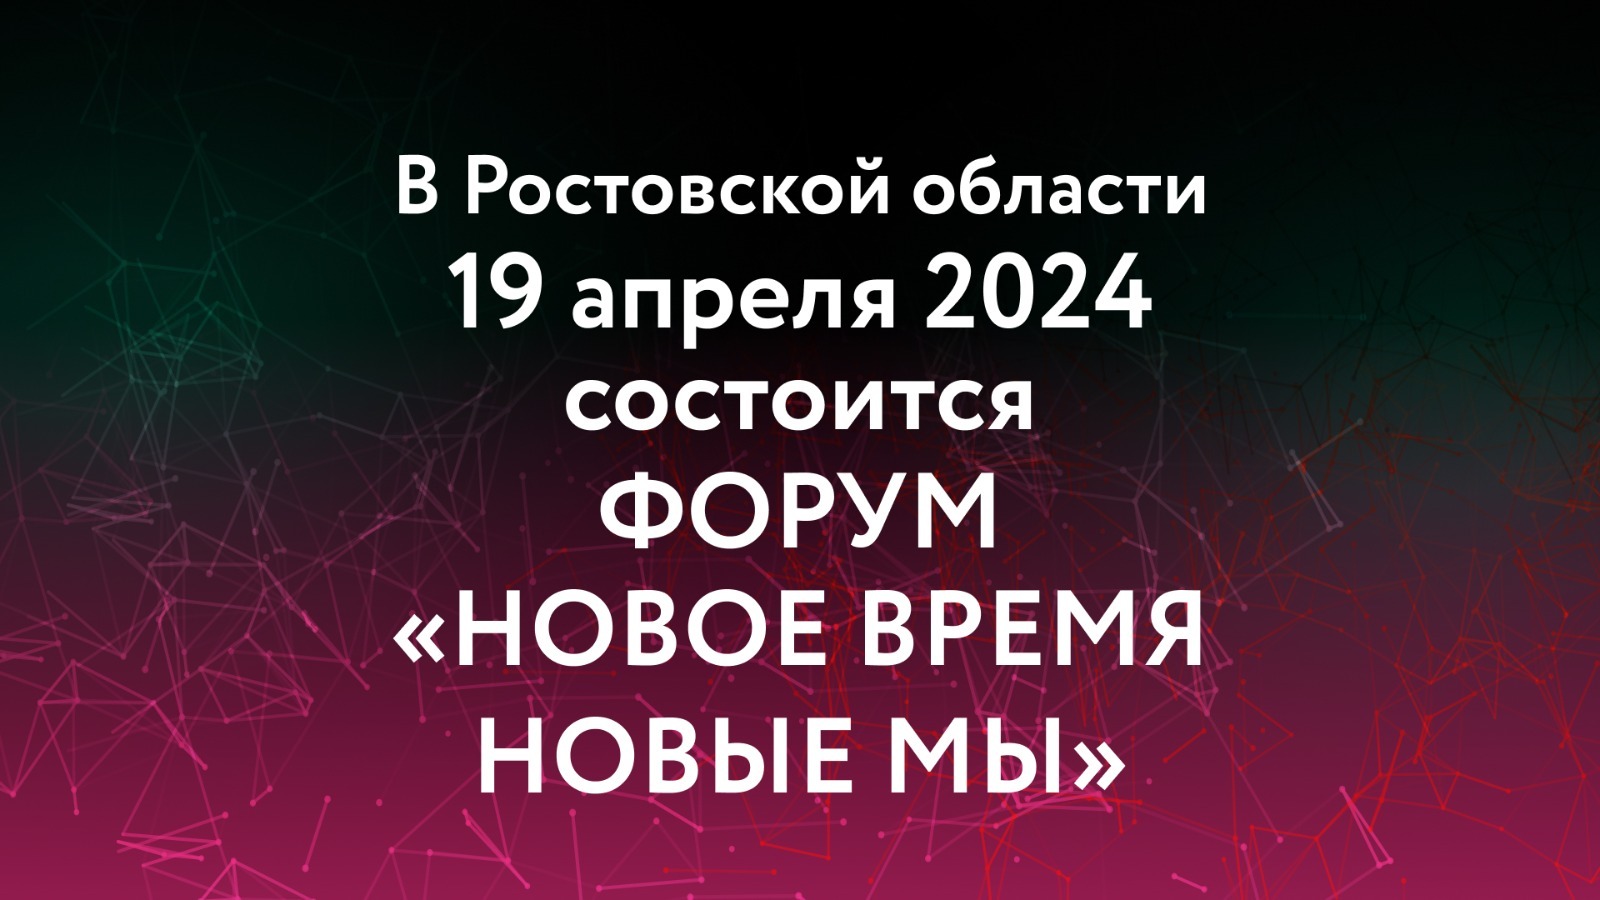 В Ростовской области 19 апреля 2024 состоится форум  «Новое время. Новые МЫ»